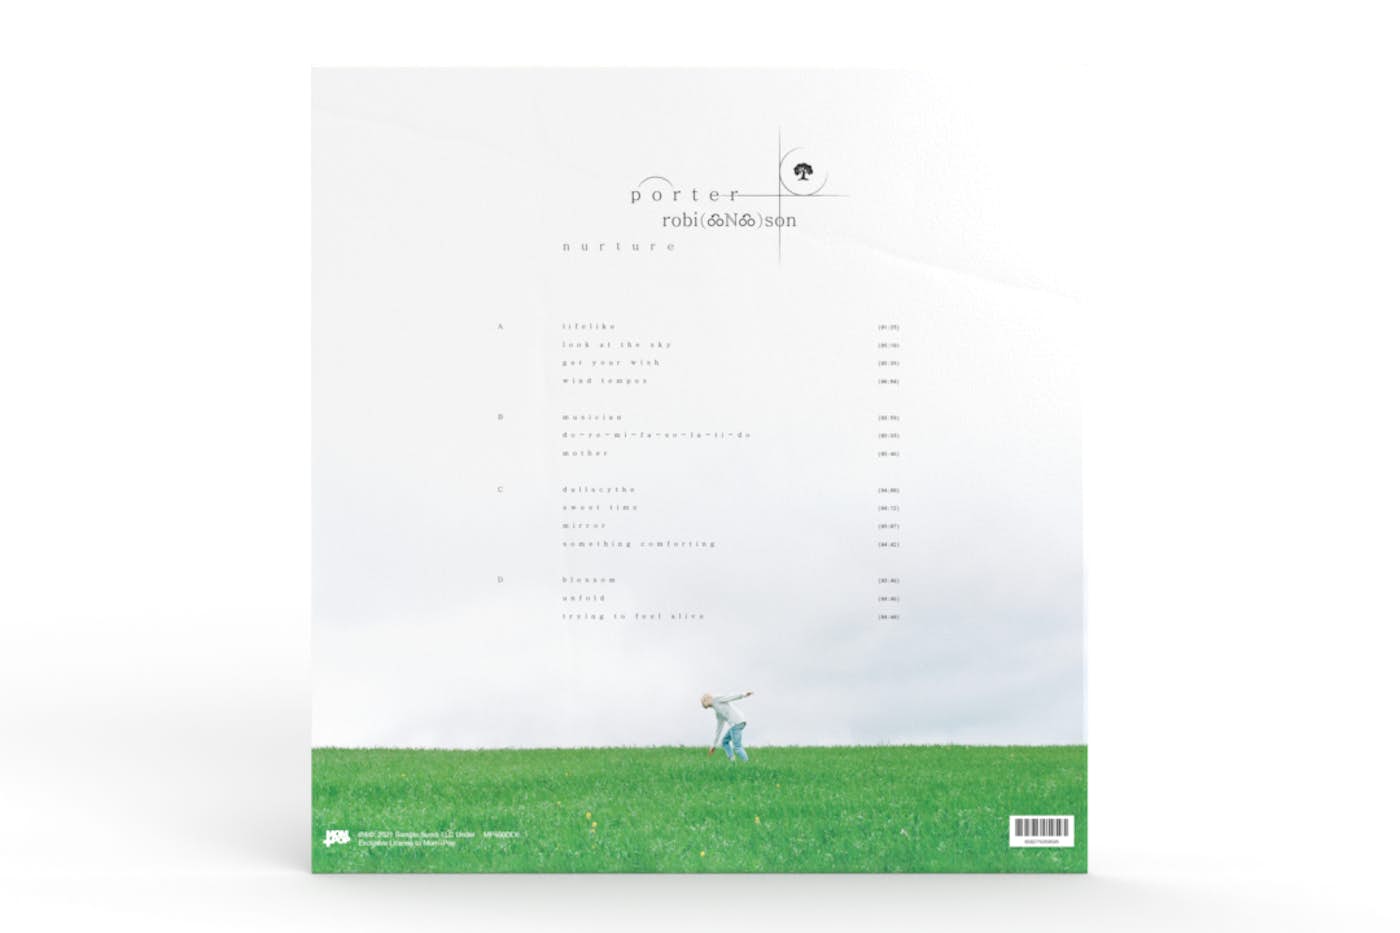 nurture 2lp standard vinyl + digital album - Porter Robinson